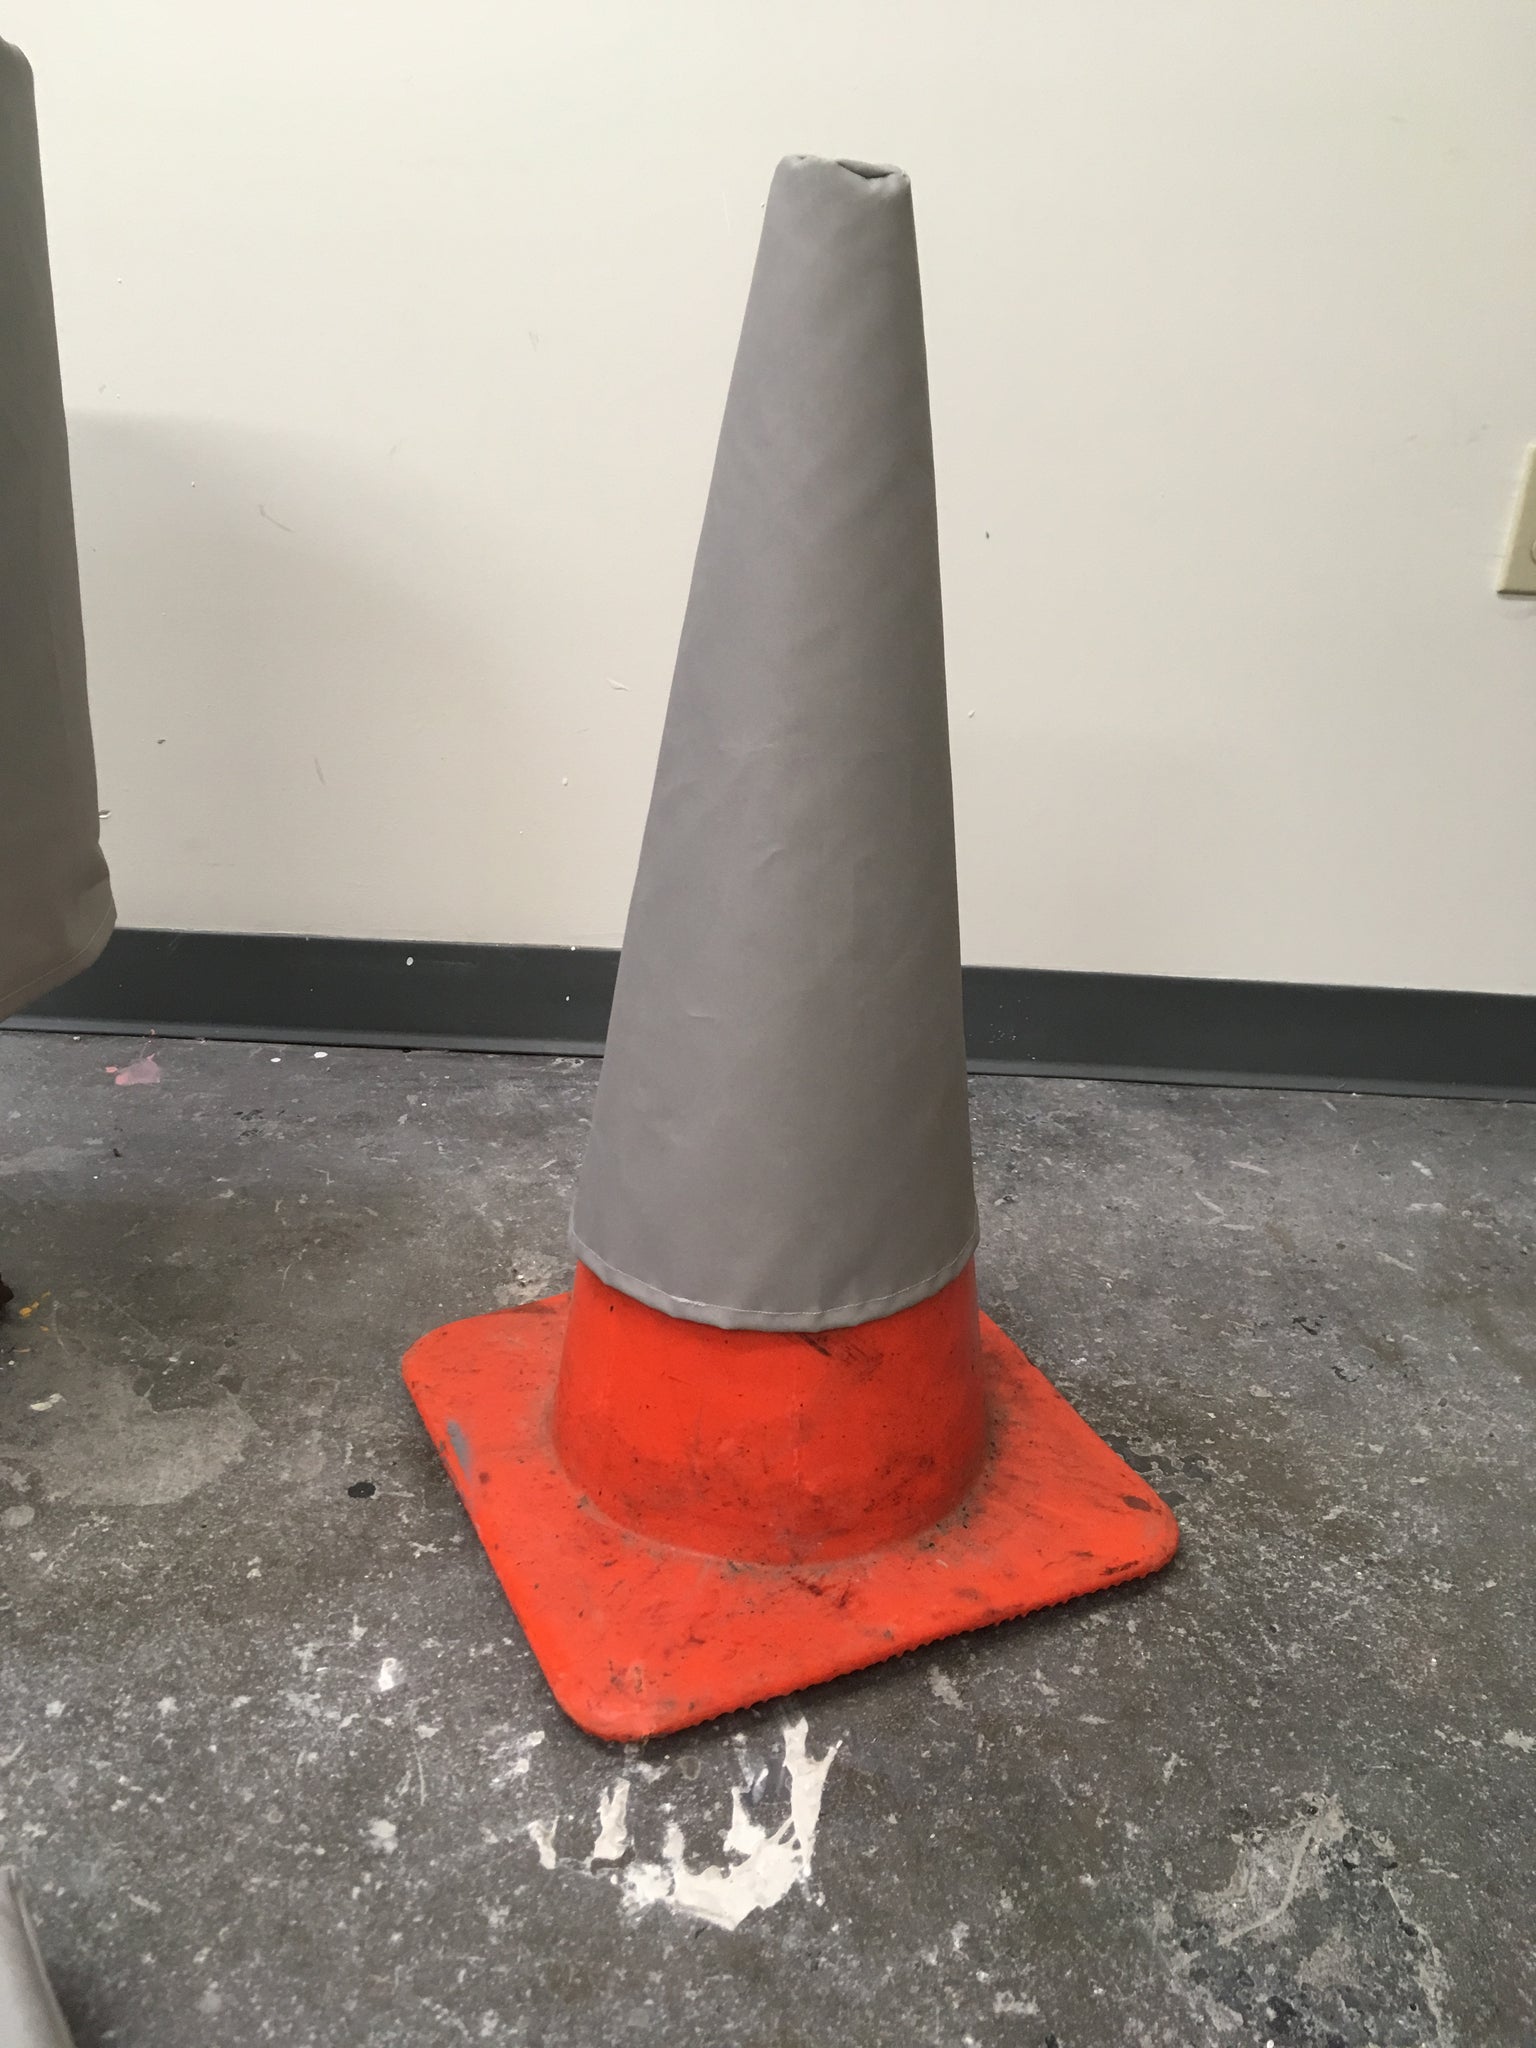 Jenny Rask, "Beloved Object (Cone)"